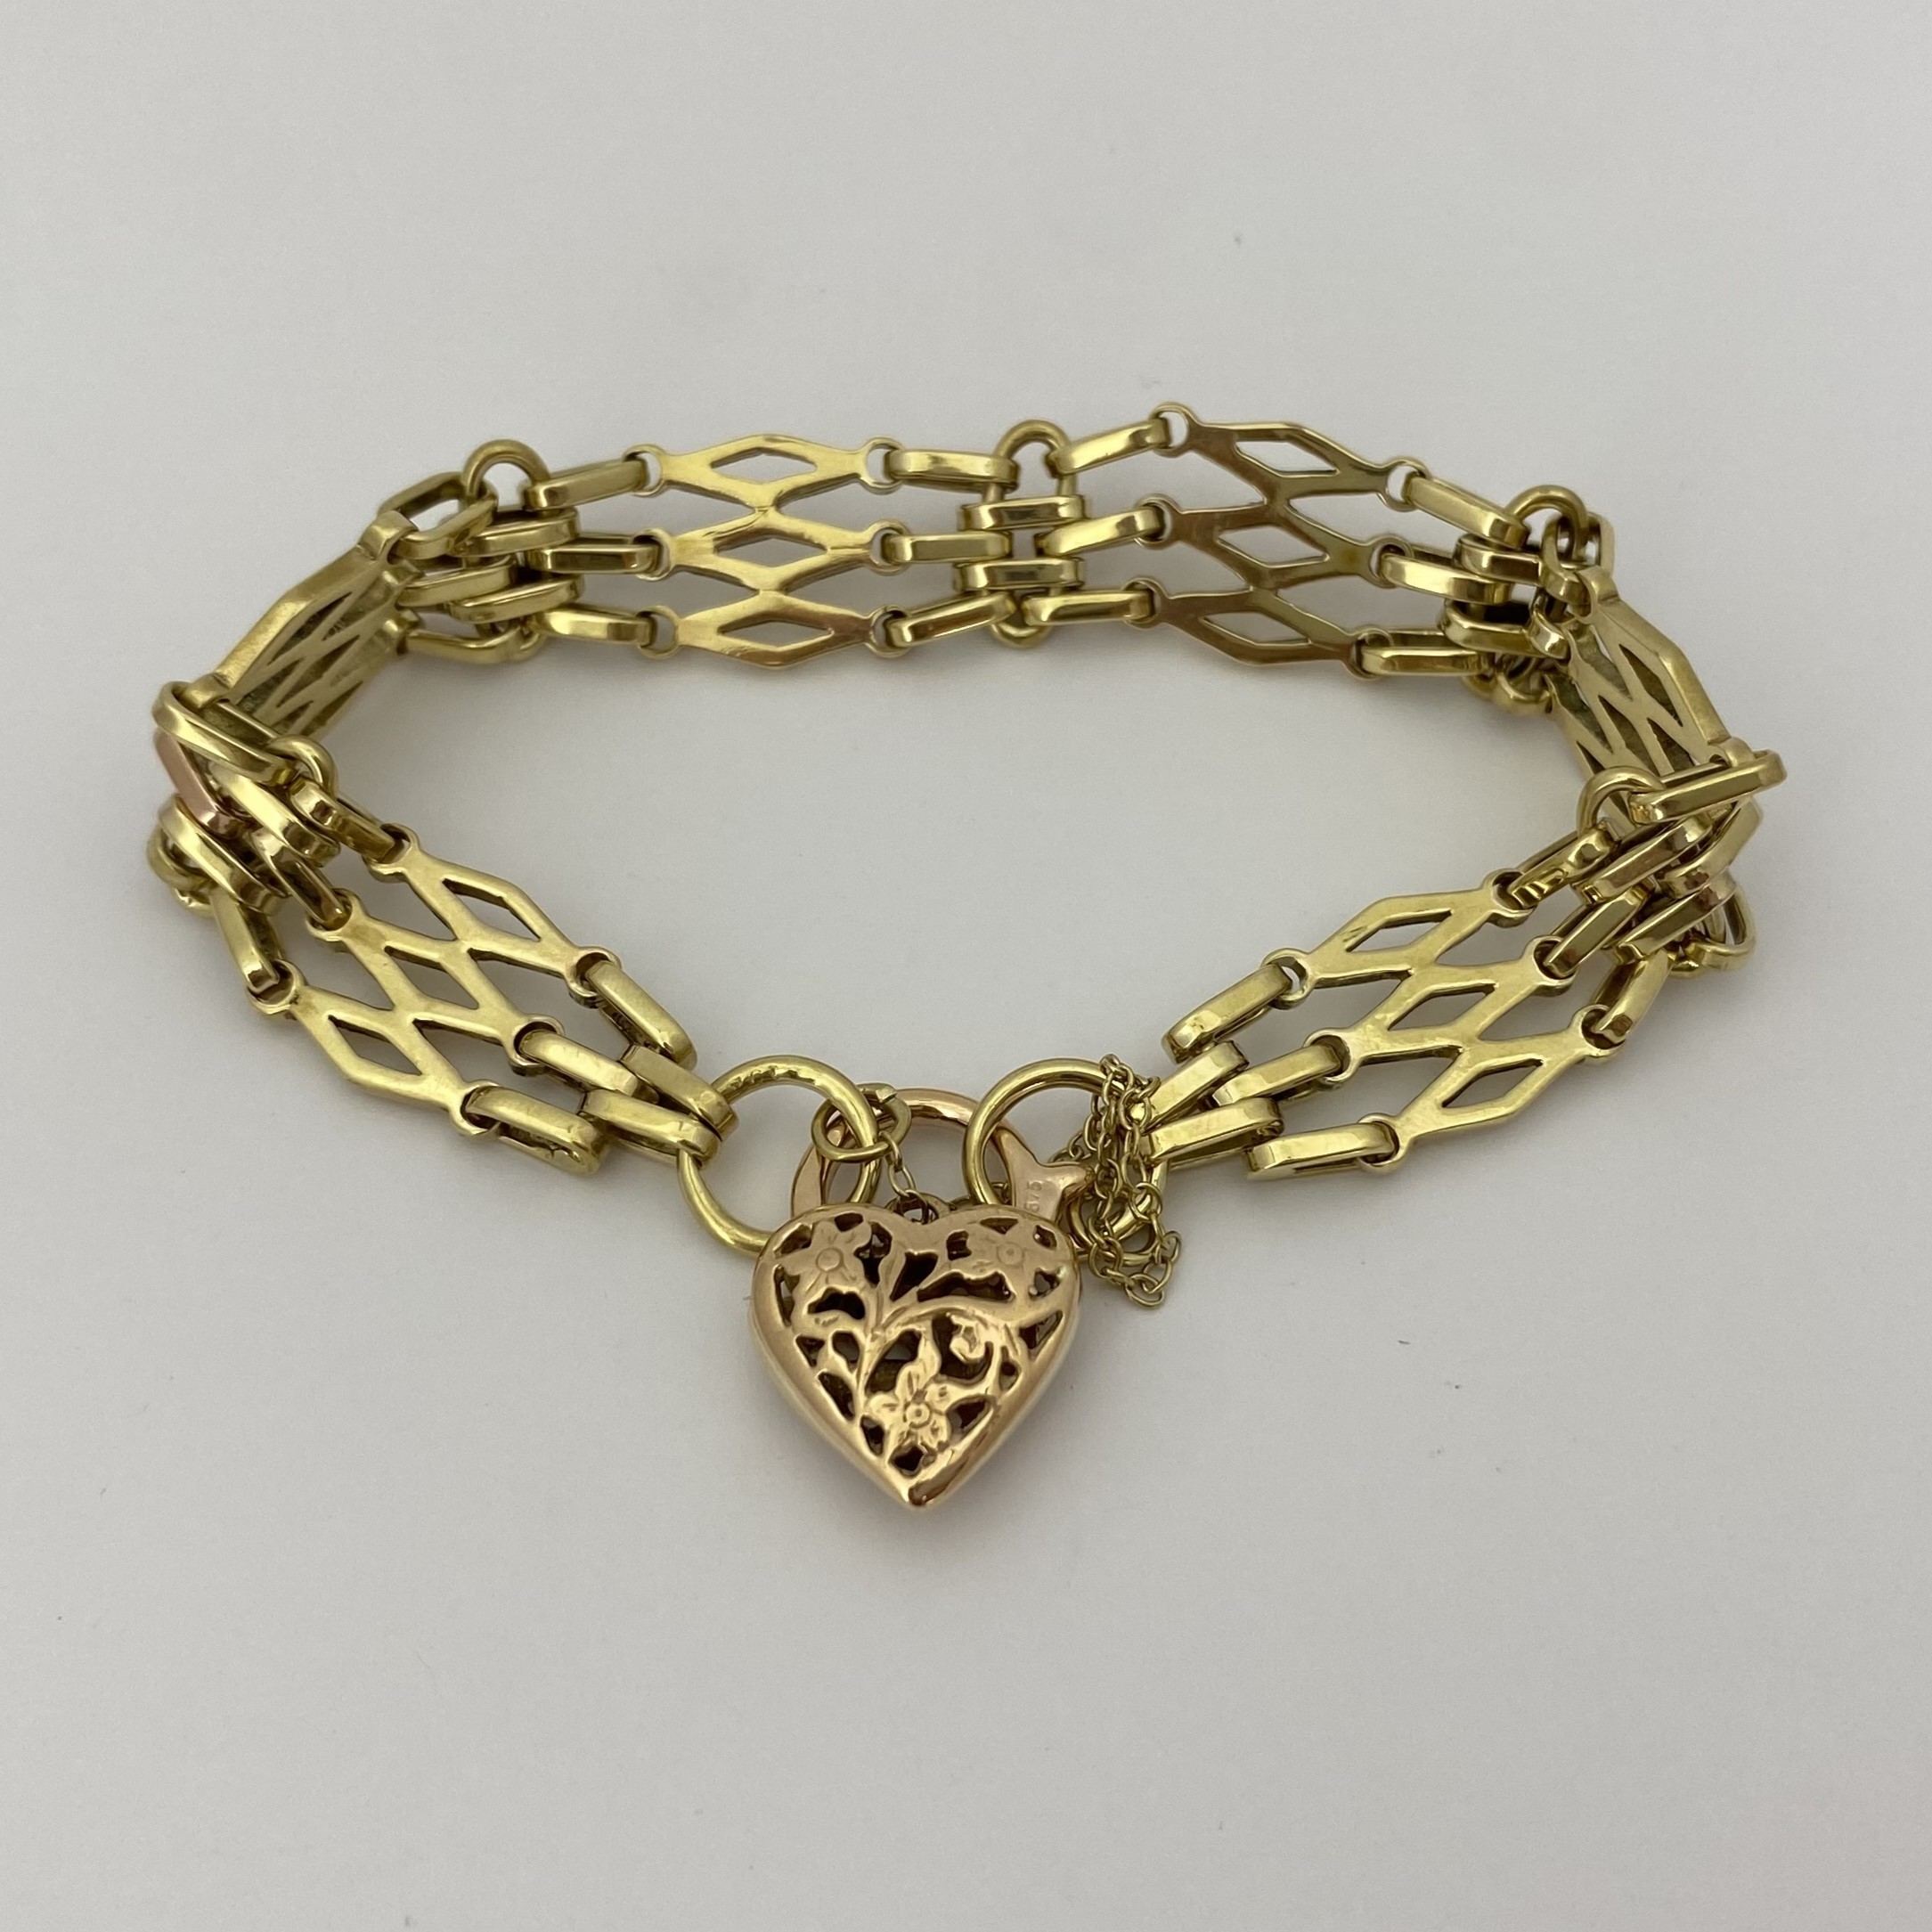 PreLoved 9ct Gold 4 Bar Gate Bracelet  7 12 Inches  Charles Nobel